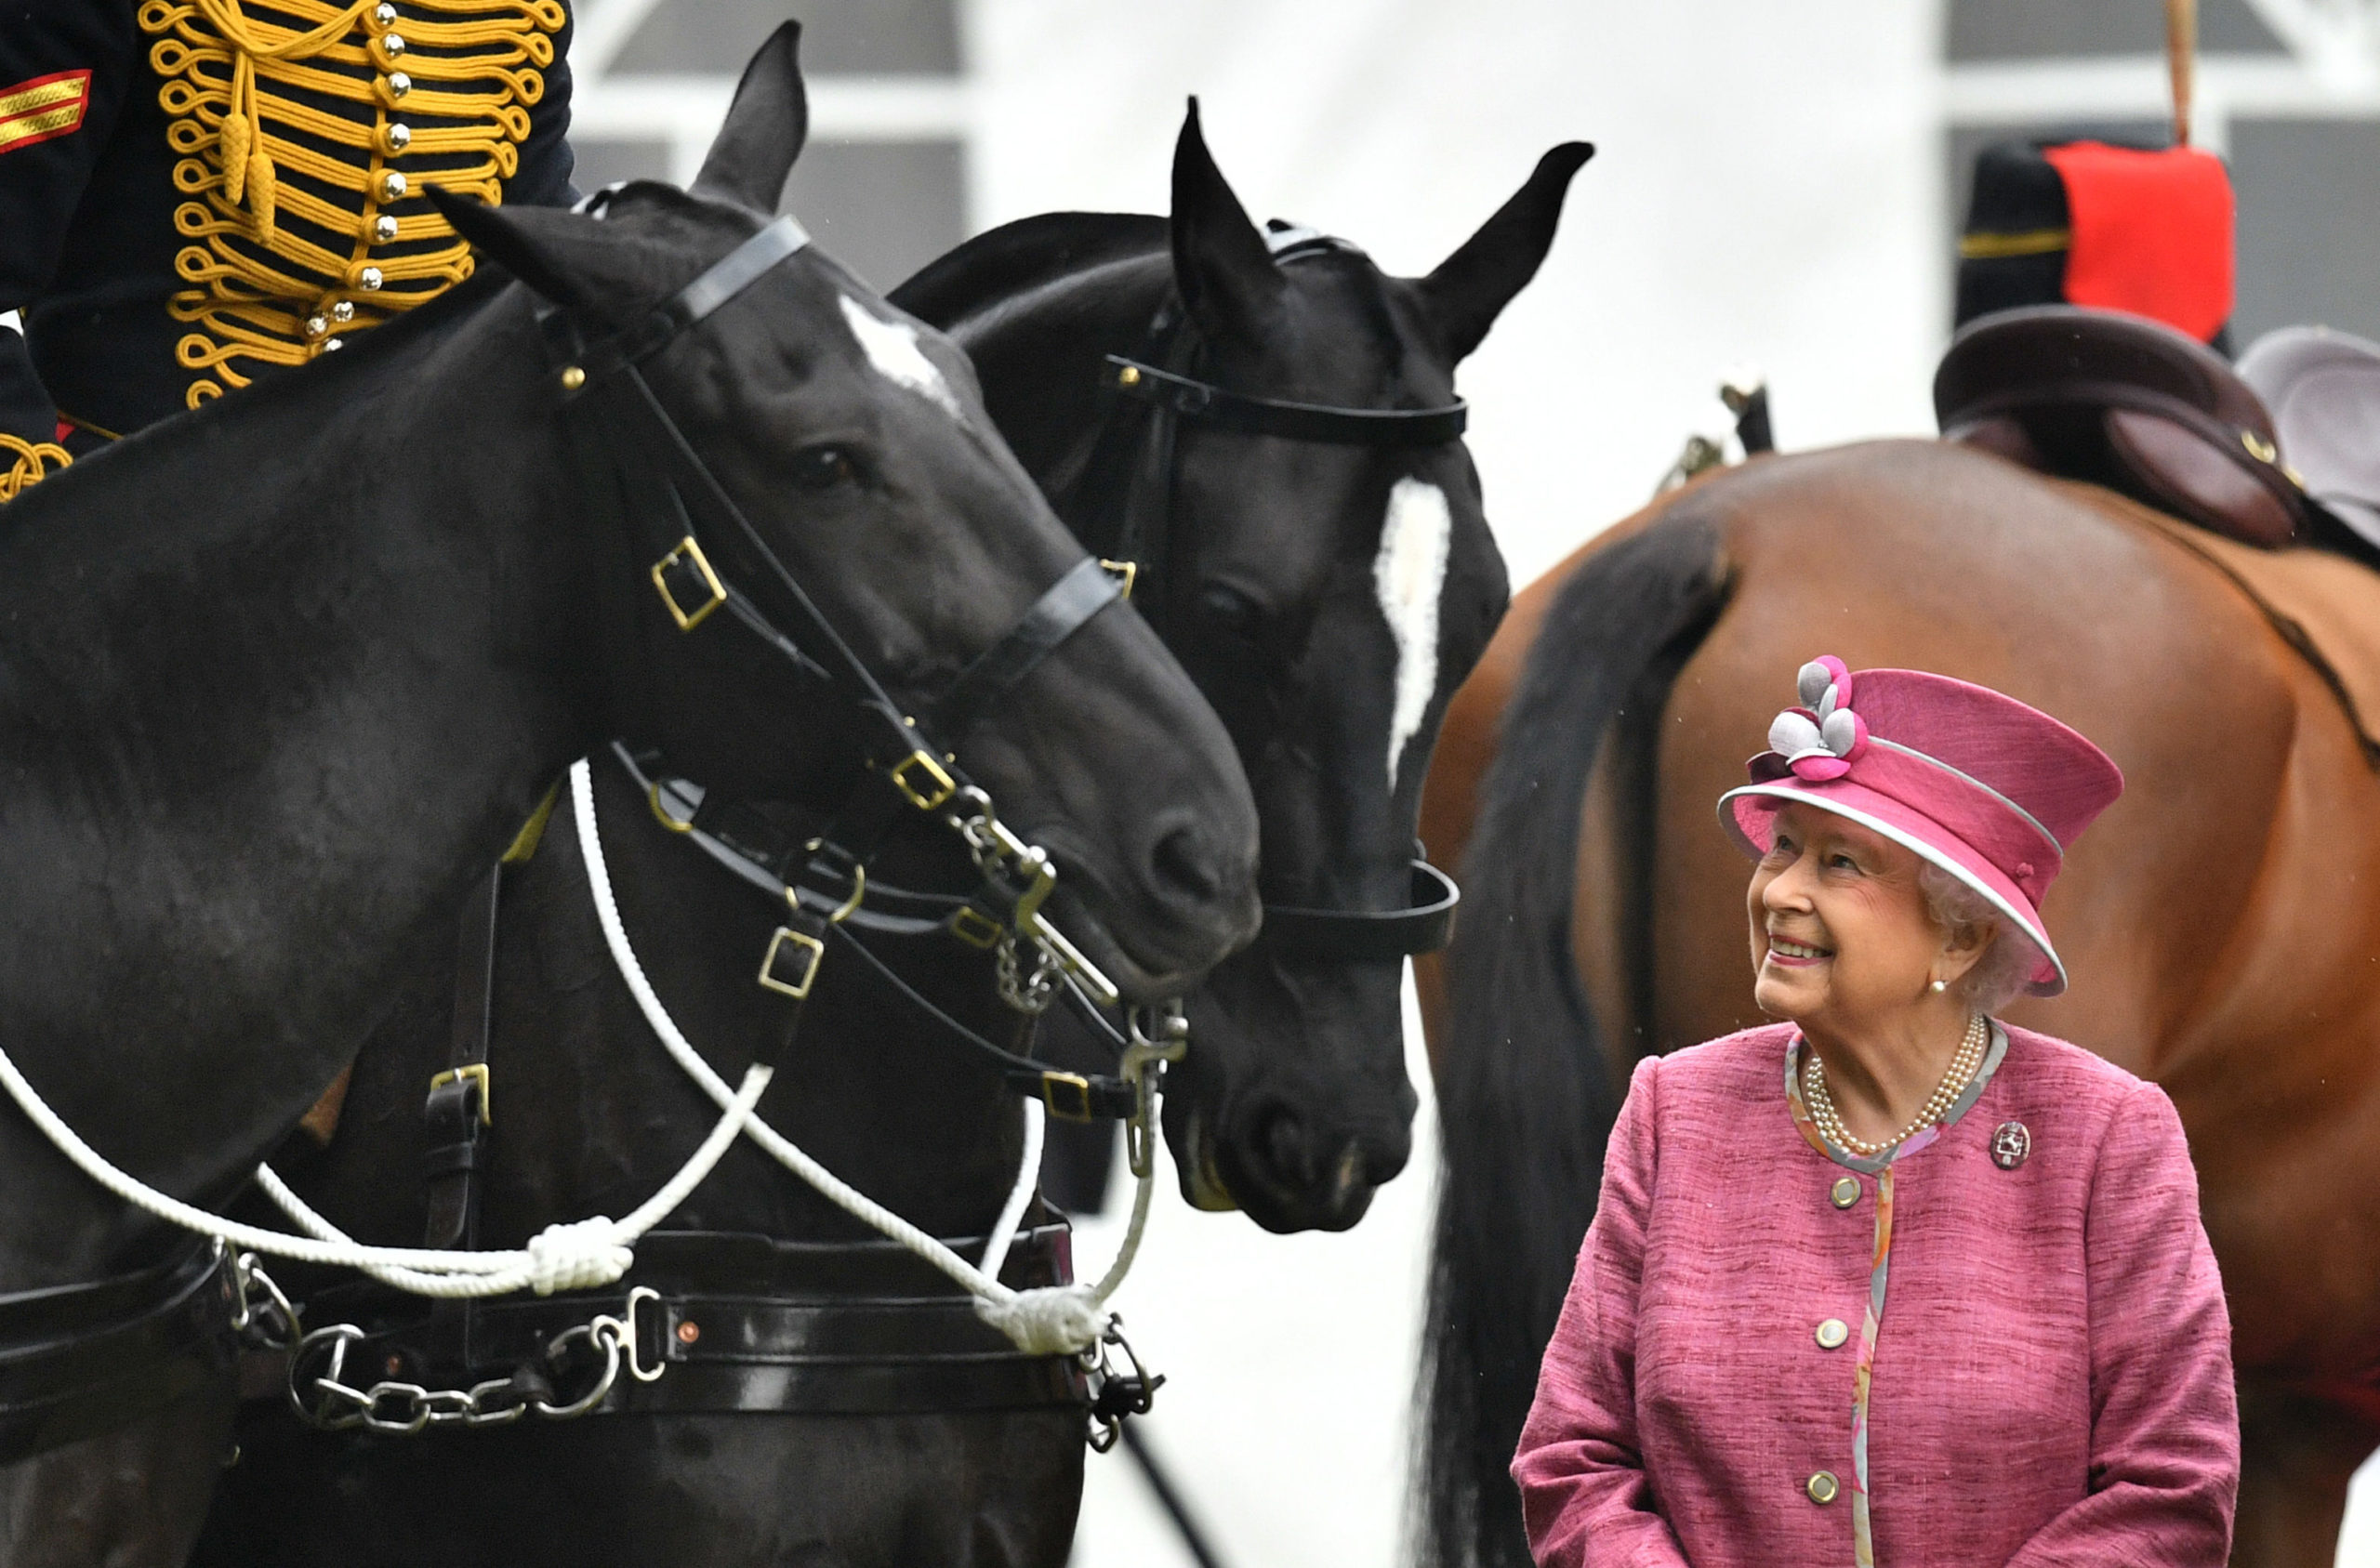 Managerul de curse al reginei, John Warren: "Sunt sigur că, dacă regina nu ar fi fost crescută ca monarh, și-ar fi găsit o vocație cu caii. Era pur și simplu în ADN-ul ei"